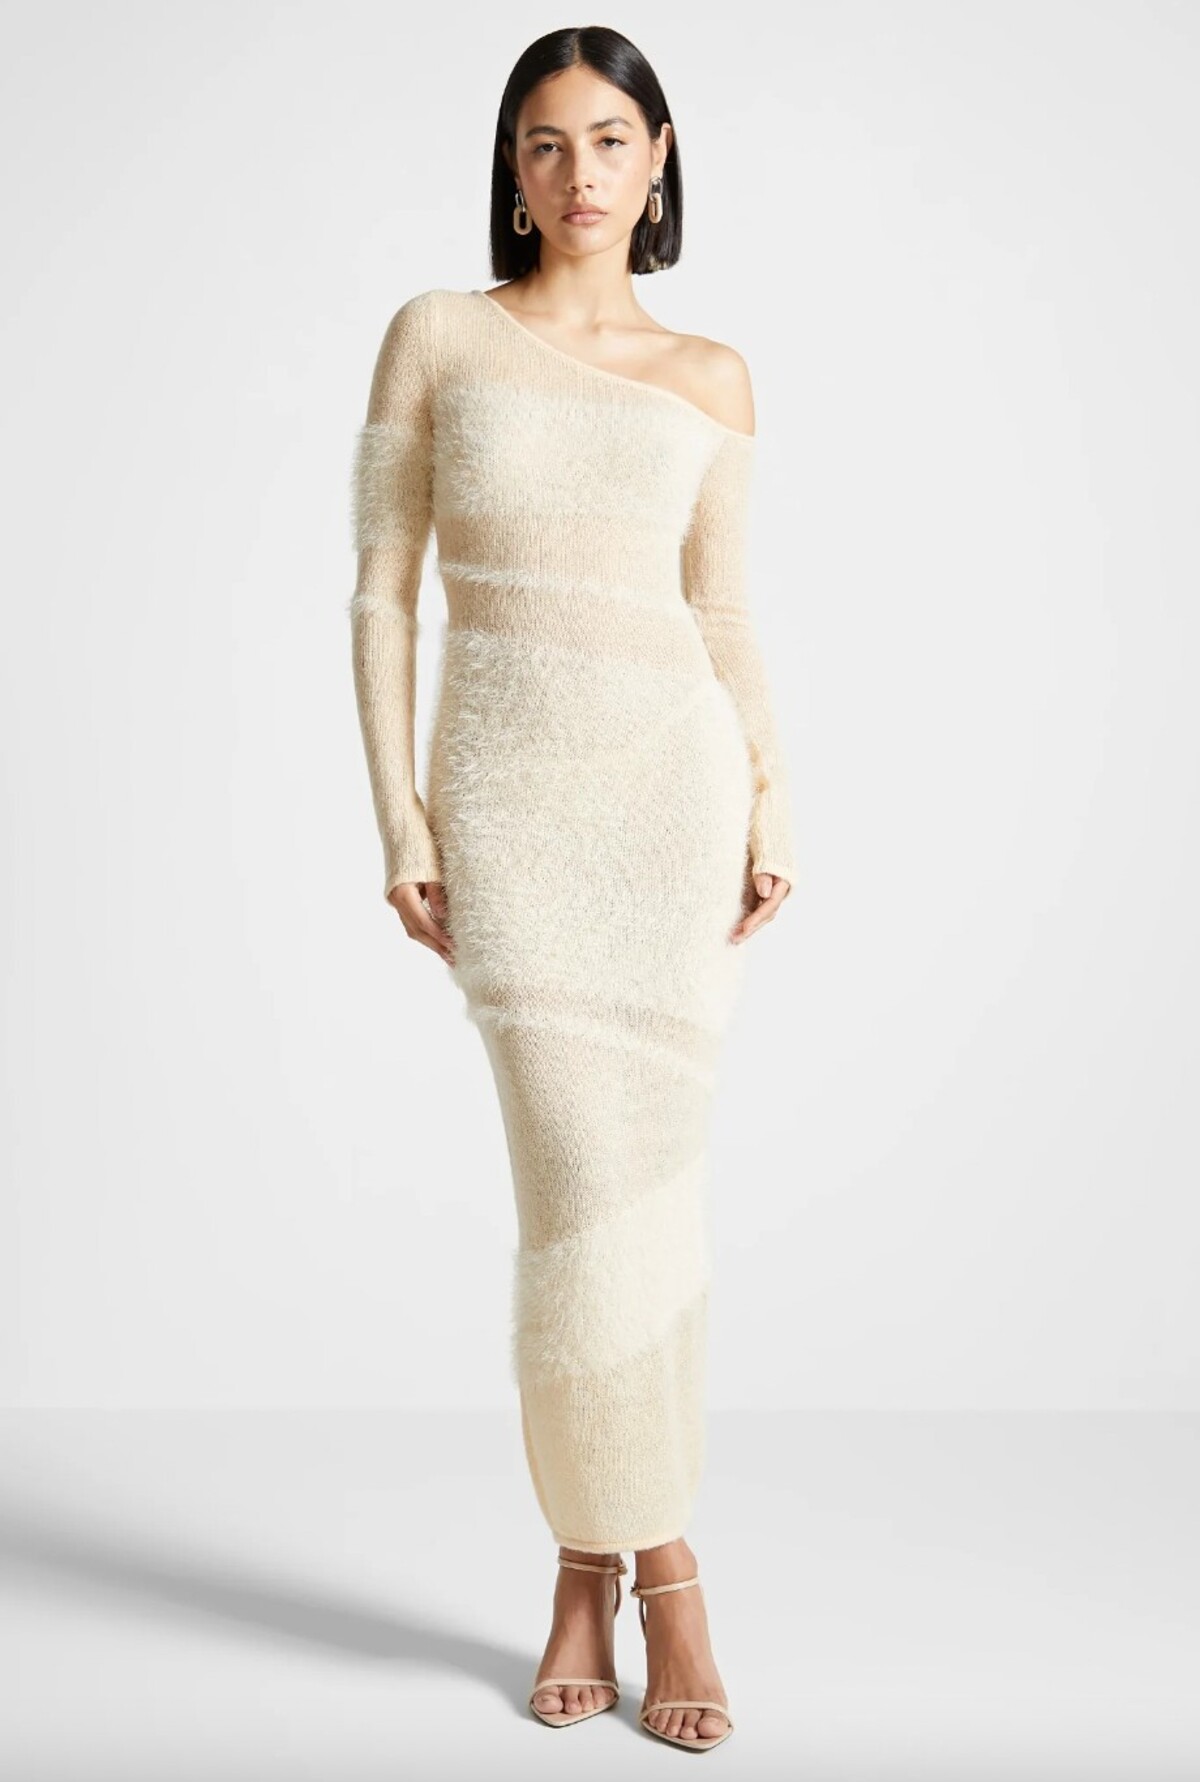 Tieto pletené šaty s jemne priesvitným efektom rozhodne nemá každá druhá. Výnimočný model na fotke nájdeš u anglickej značky Manière De Voir za 104,92 eur.